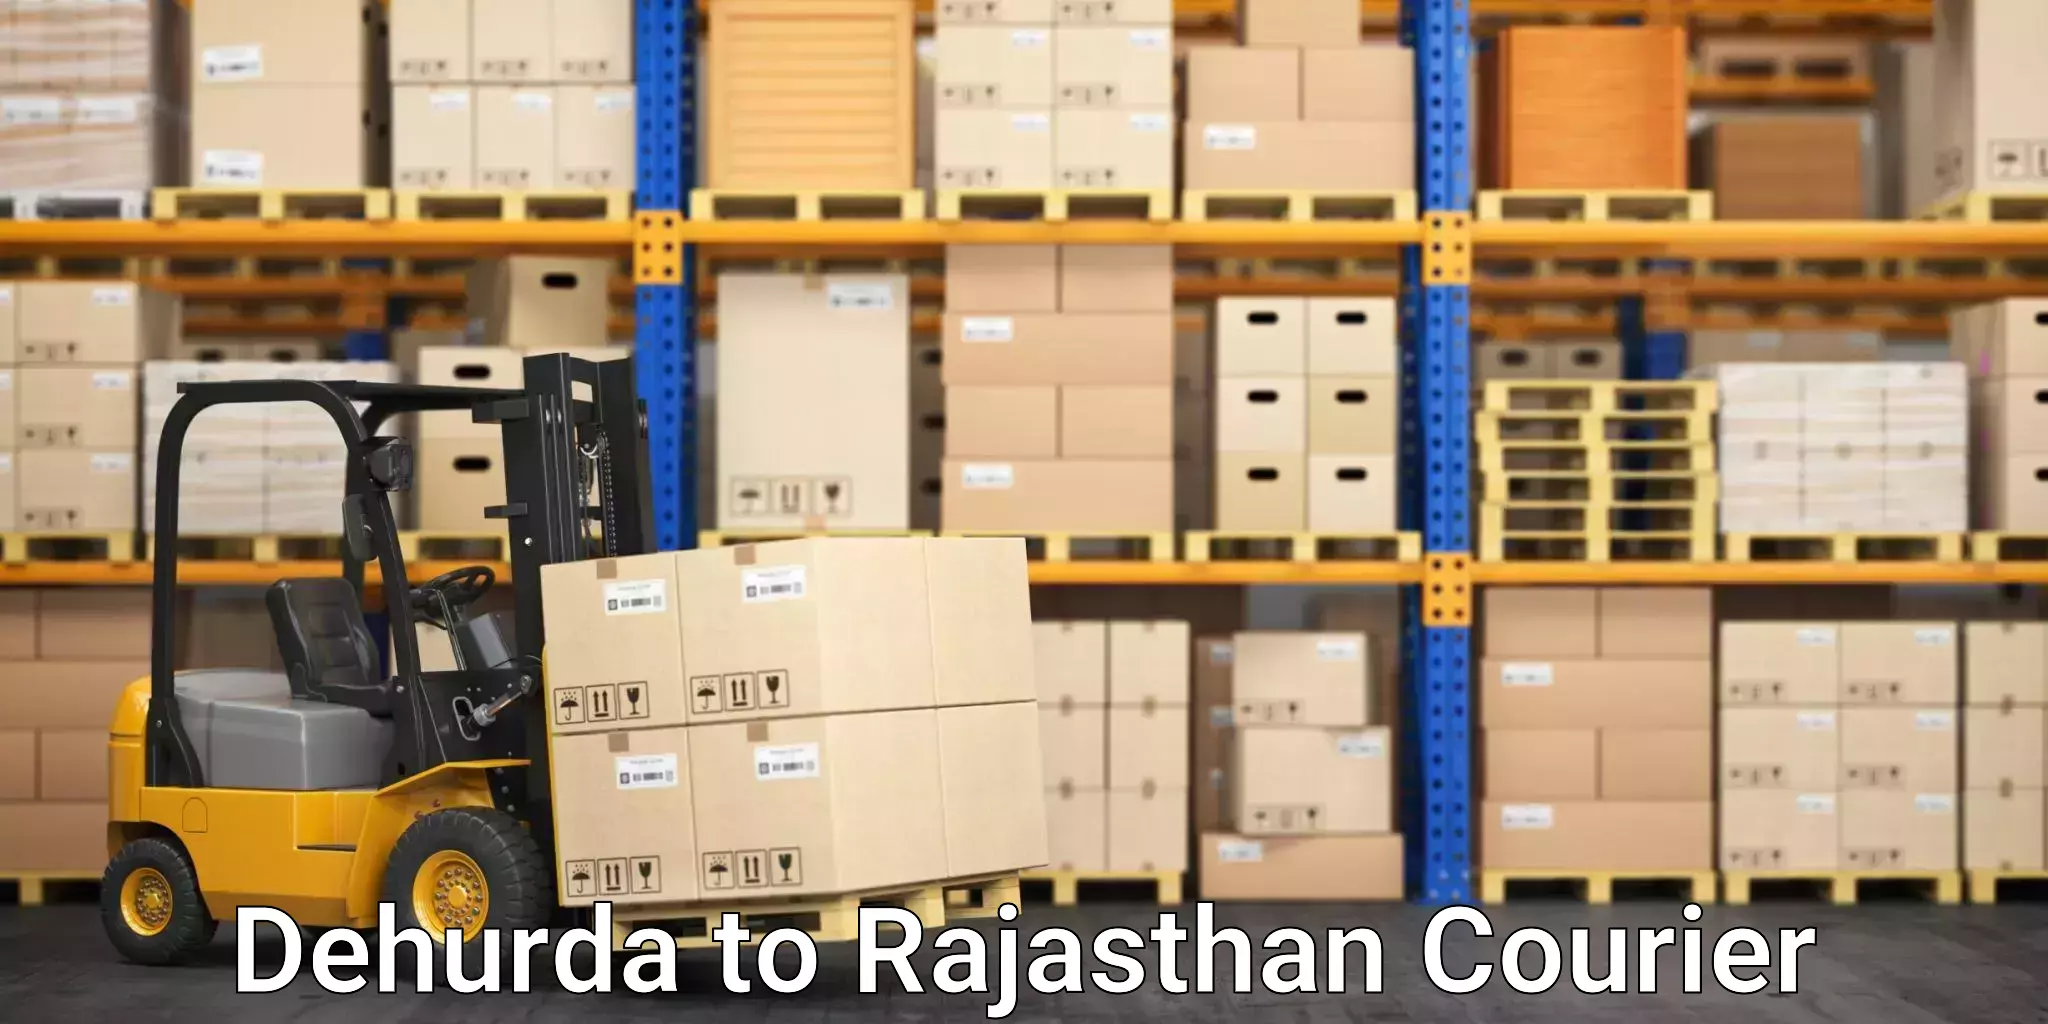 24-hour courier service Dehurda to Rajasthan